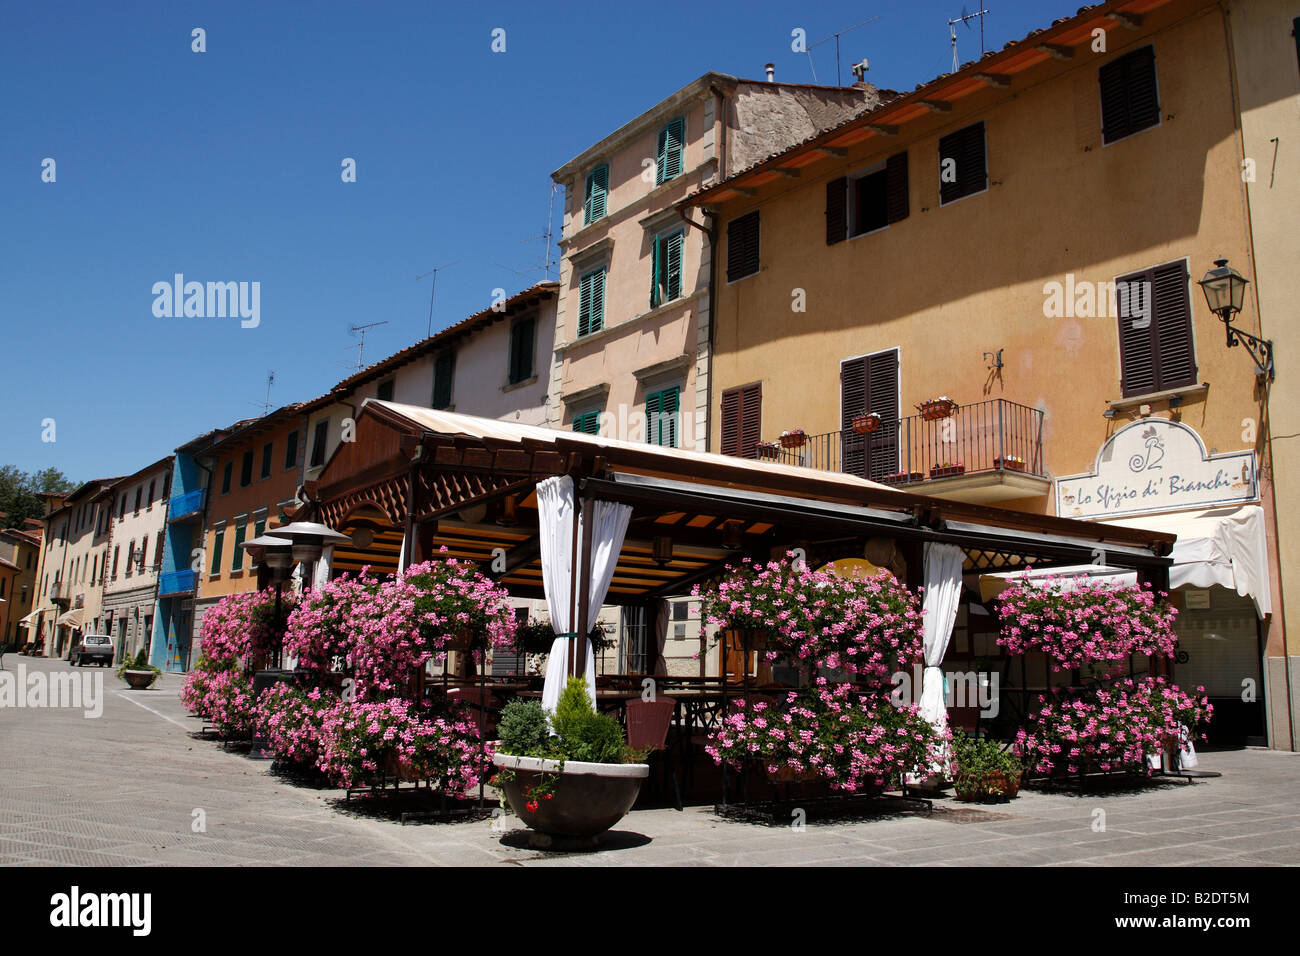 gaiole in chianti tuscany italy europe Stock Photo